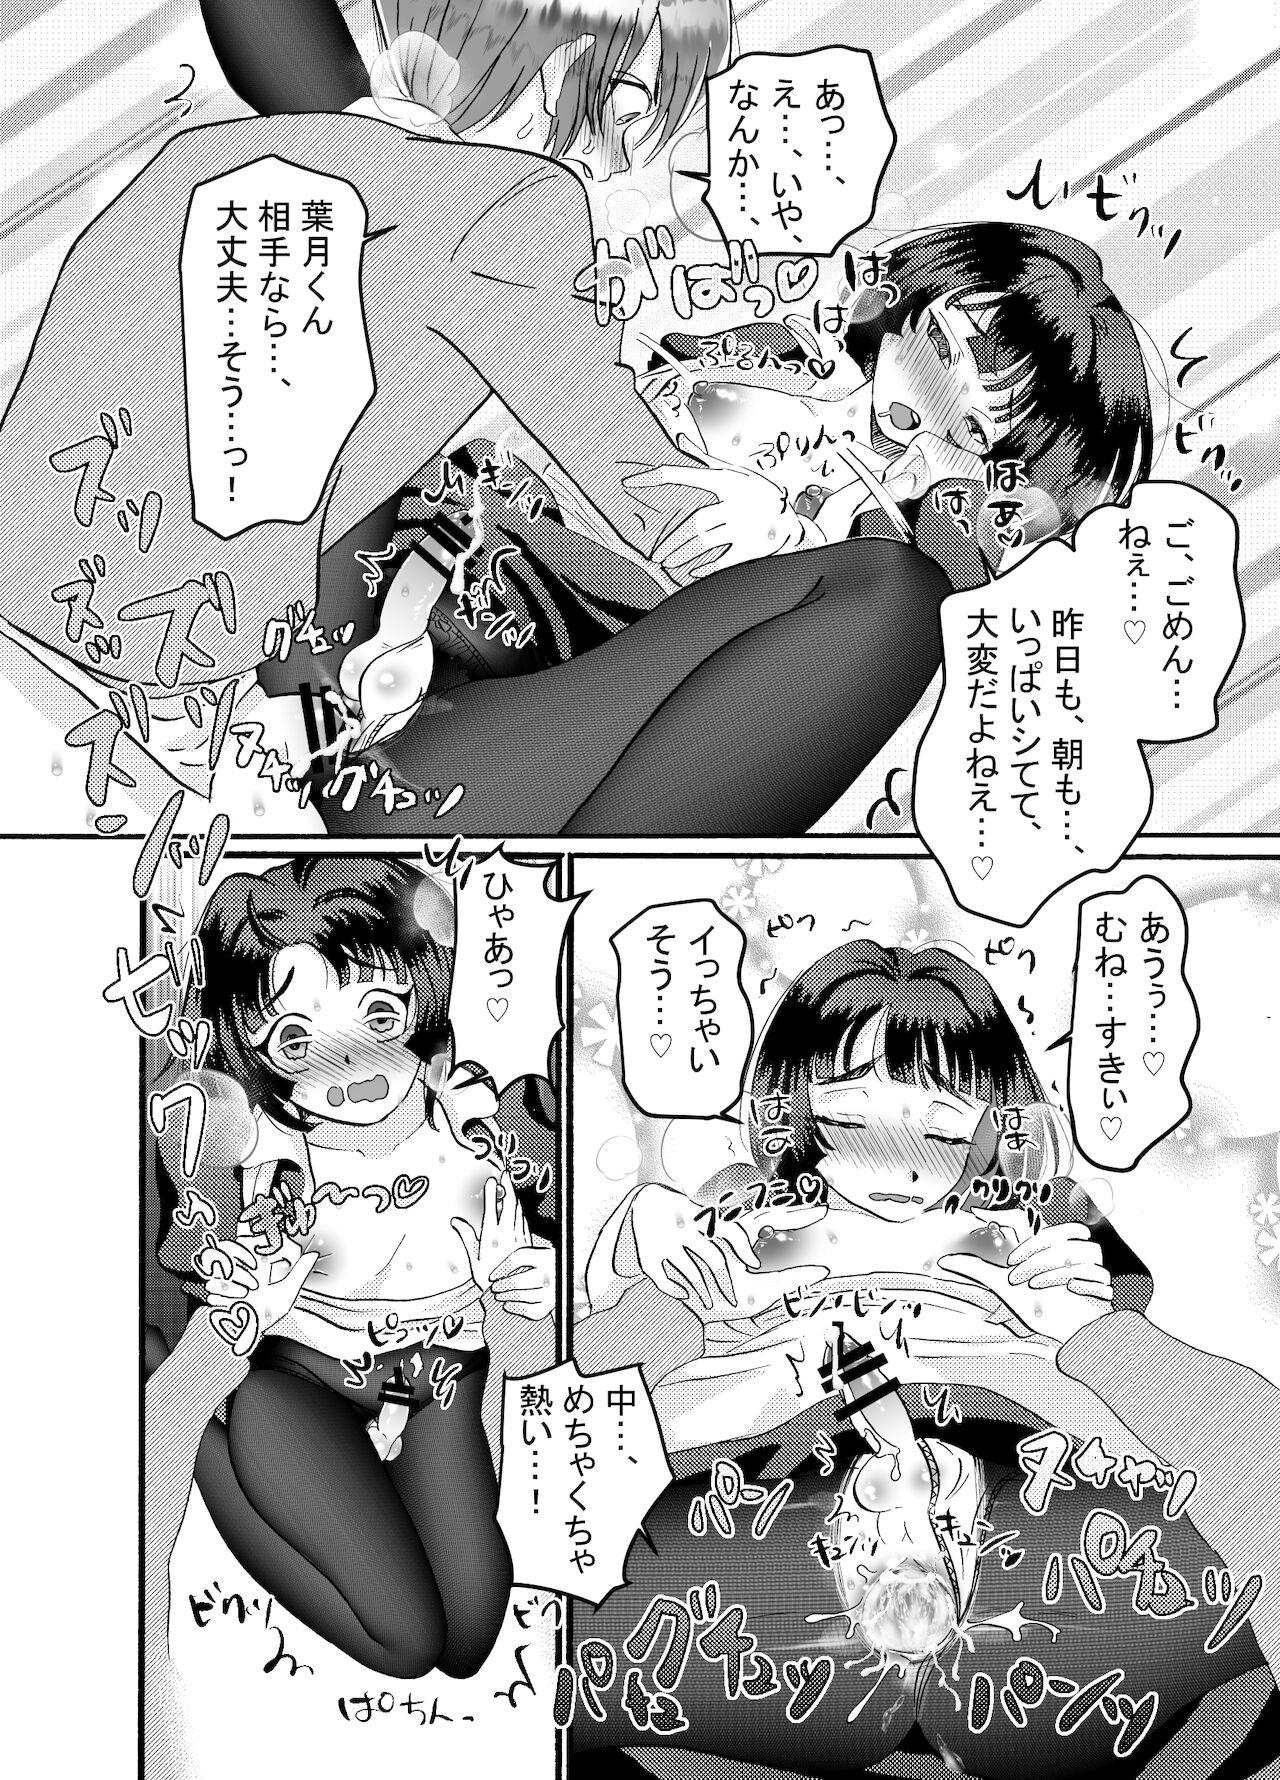 Culazo メイド♂に搾り取られる漫画 - Original Para - Page 9